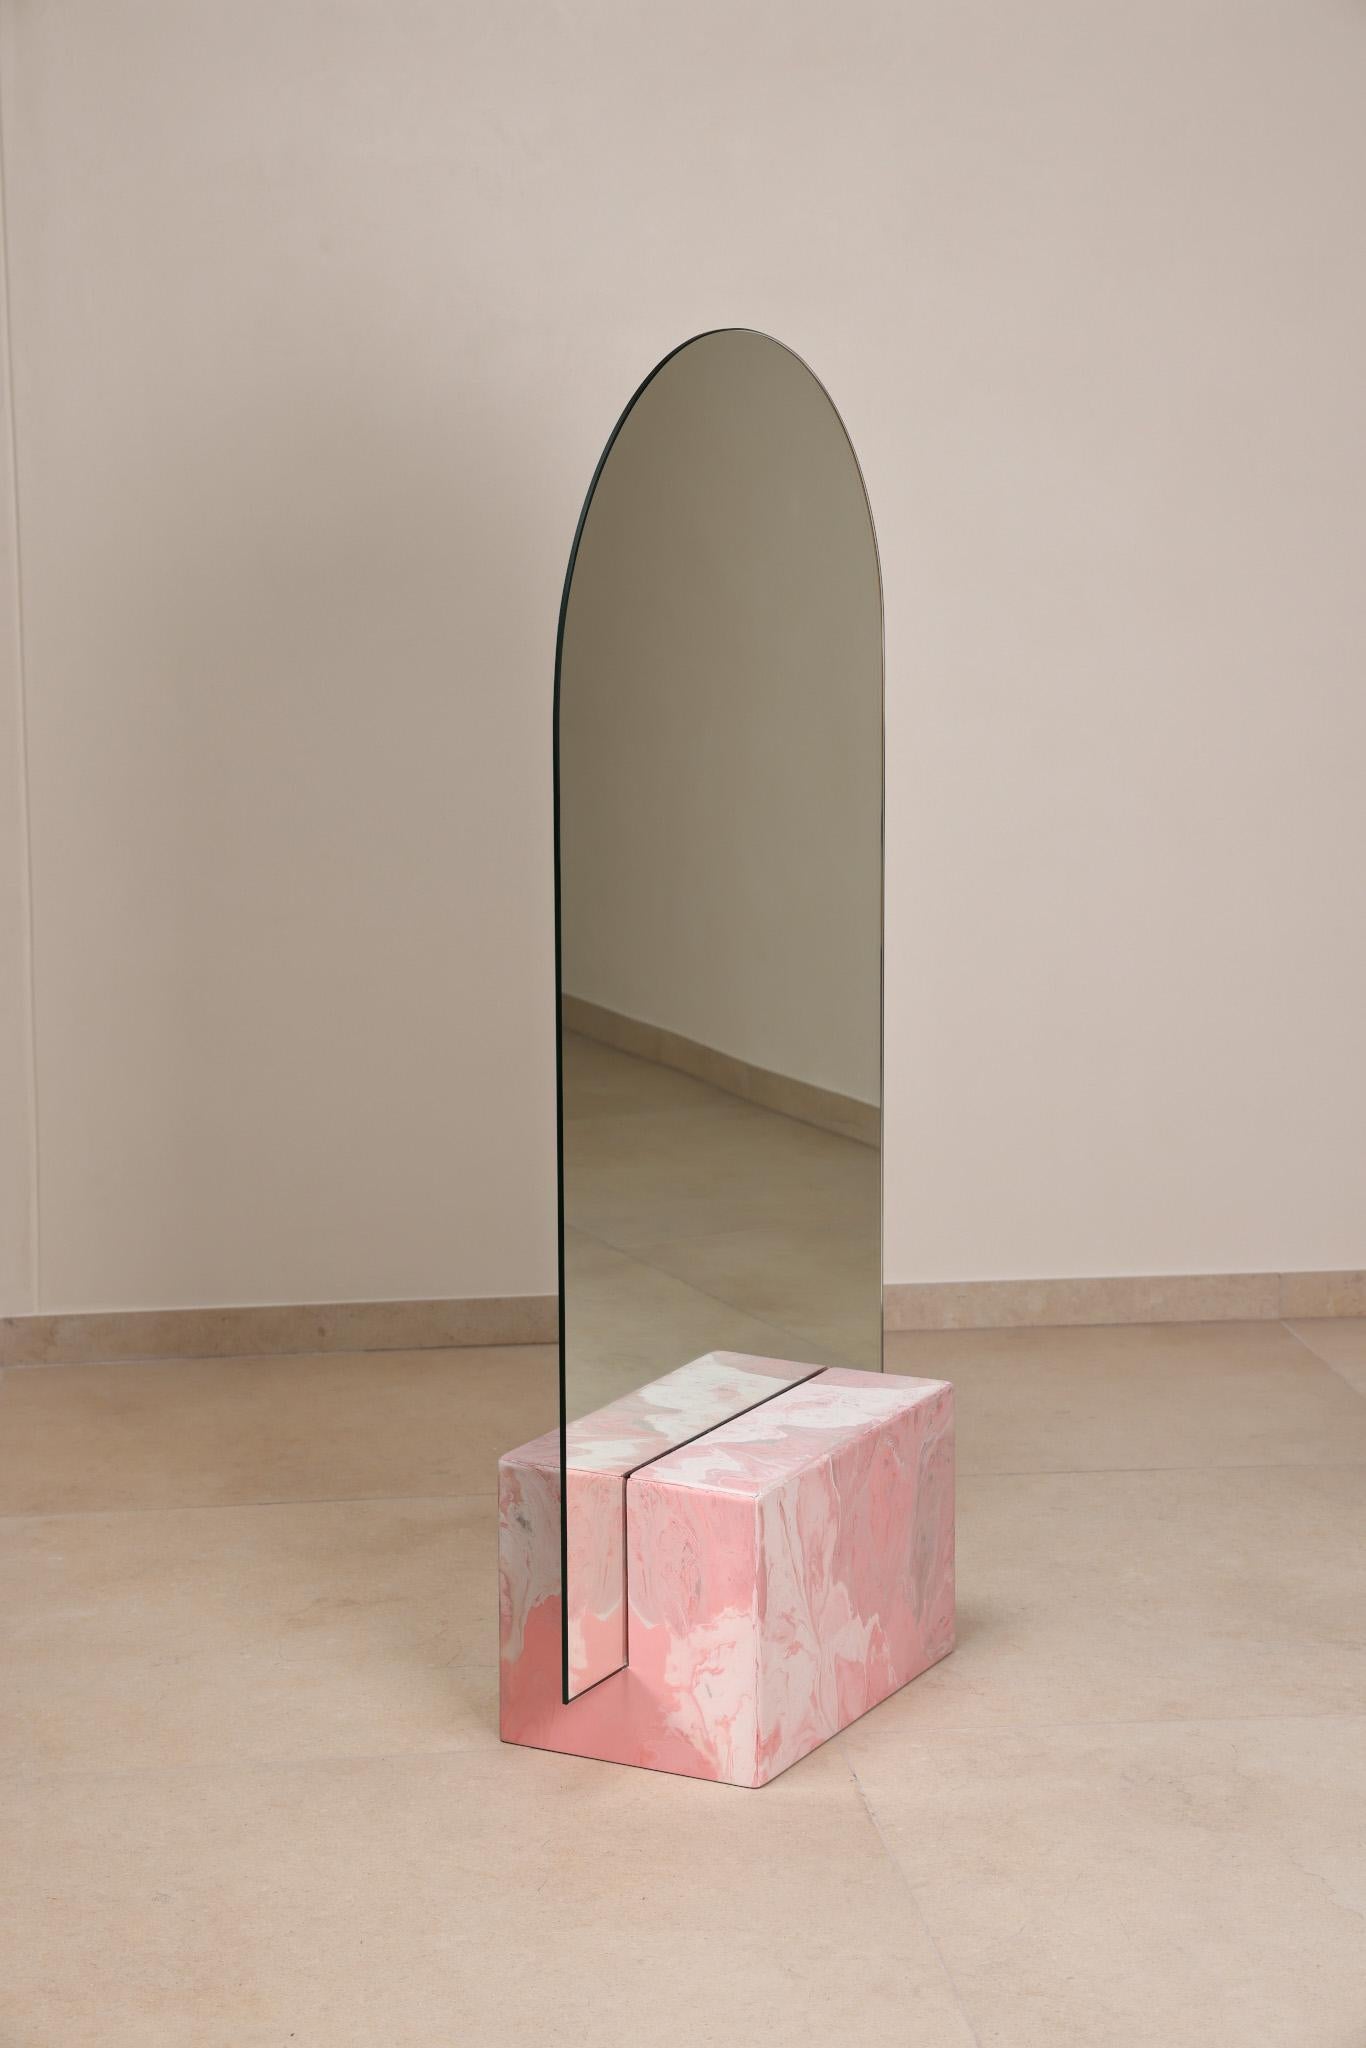 Rosa Konsolenspiegel Handgefertigt aus 100% recyceltem Kunststoff von Anqa Studios
Mit seinem steinartigen Boden und der zerbrechlich wirkenden Silhouette des Oberteils ist der ANQA Moonrise Spiegel eine moderne Verbindung von Kunst und Funktion.